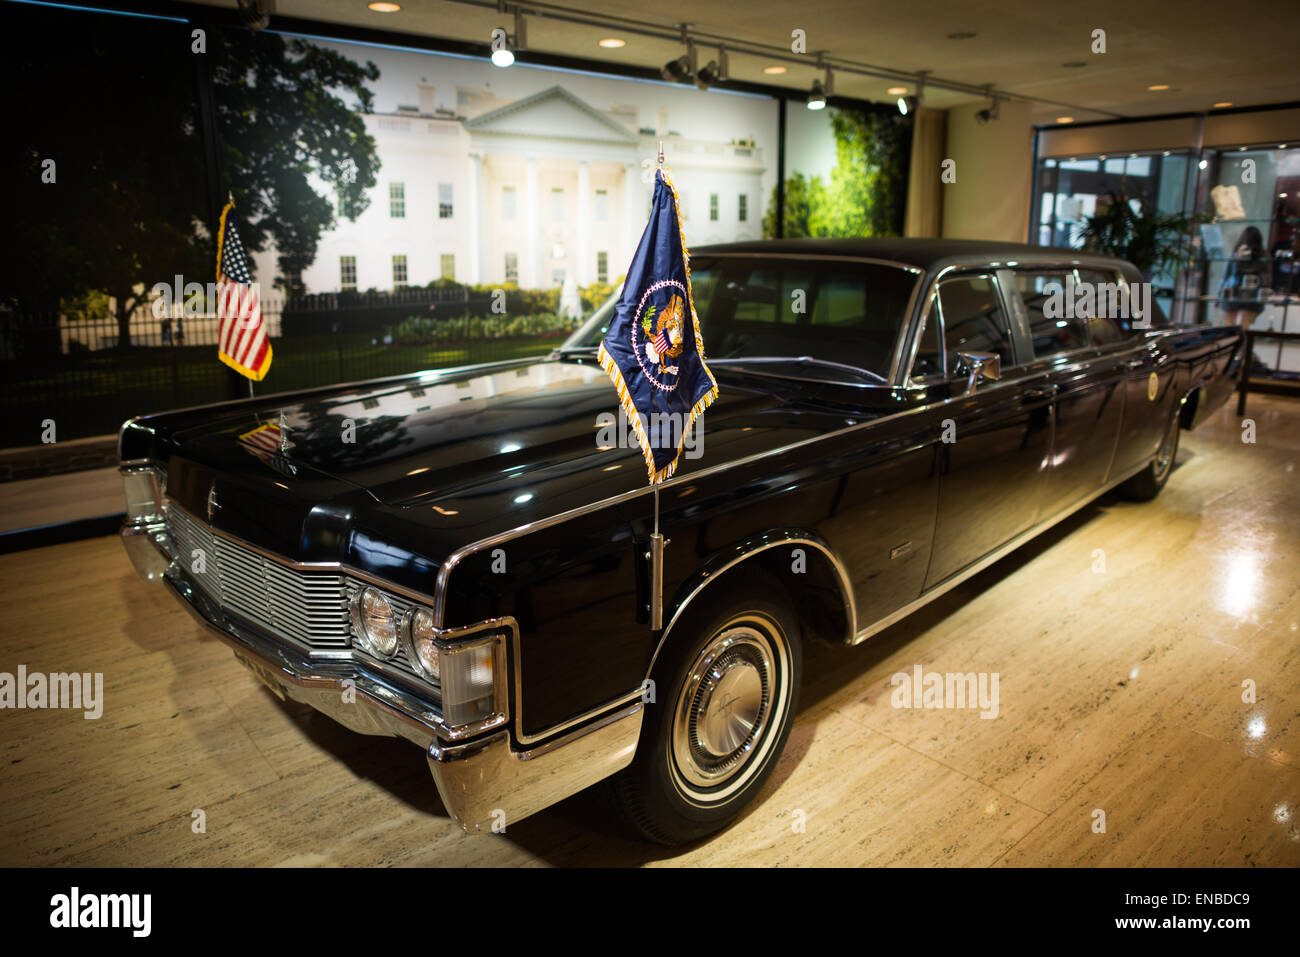 AUSTIN, Texas - la limousine présidentielle de LBJ exposée à la bibliothèque LBJ. La bibliothèque et le musée LBJ (LBJ Presidential Library) est l'une des 13 bibliothèques présidentielles administrées par la National Archives and Records Administration. Il abrite des documents historiques de la présidence et de la vie politique de Lyndon Johnson ainsi qu'un musée. Banque D'Images